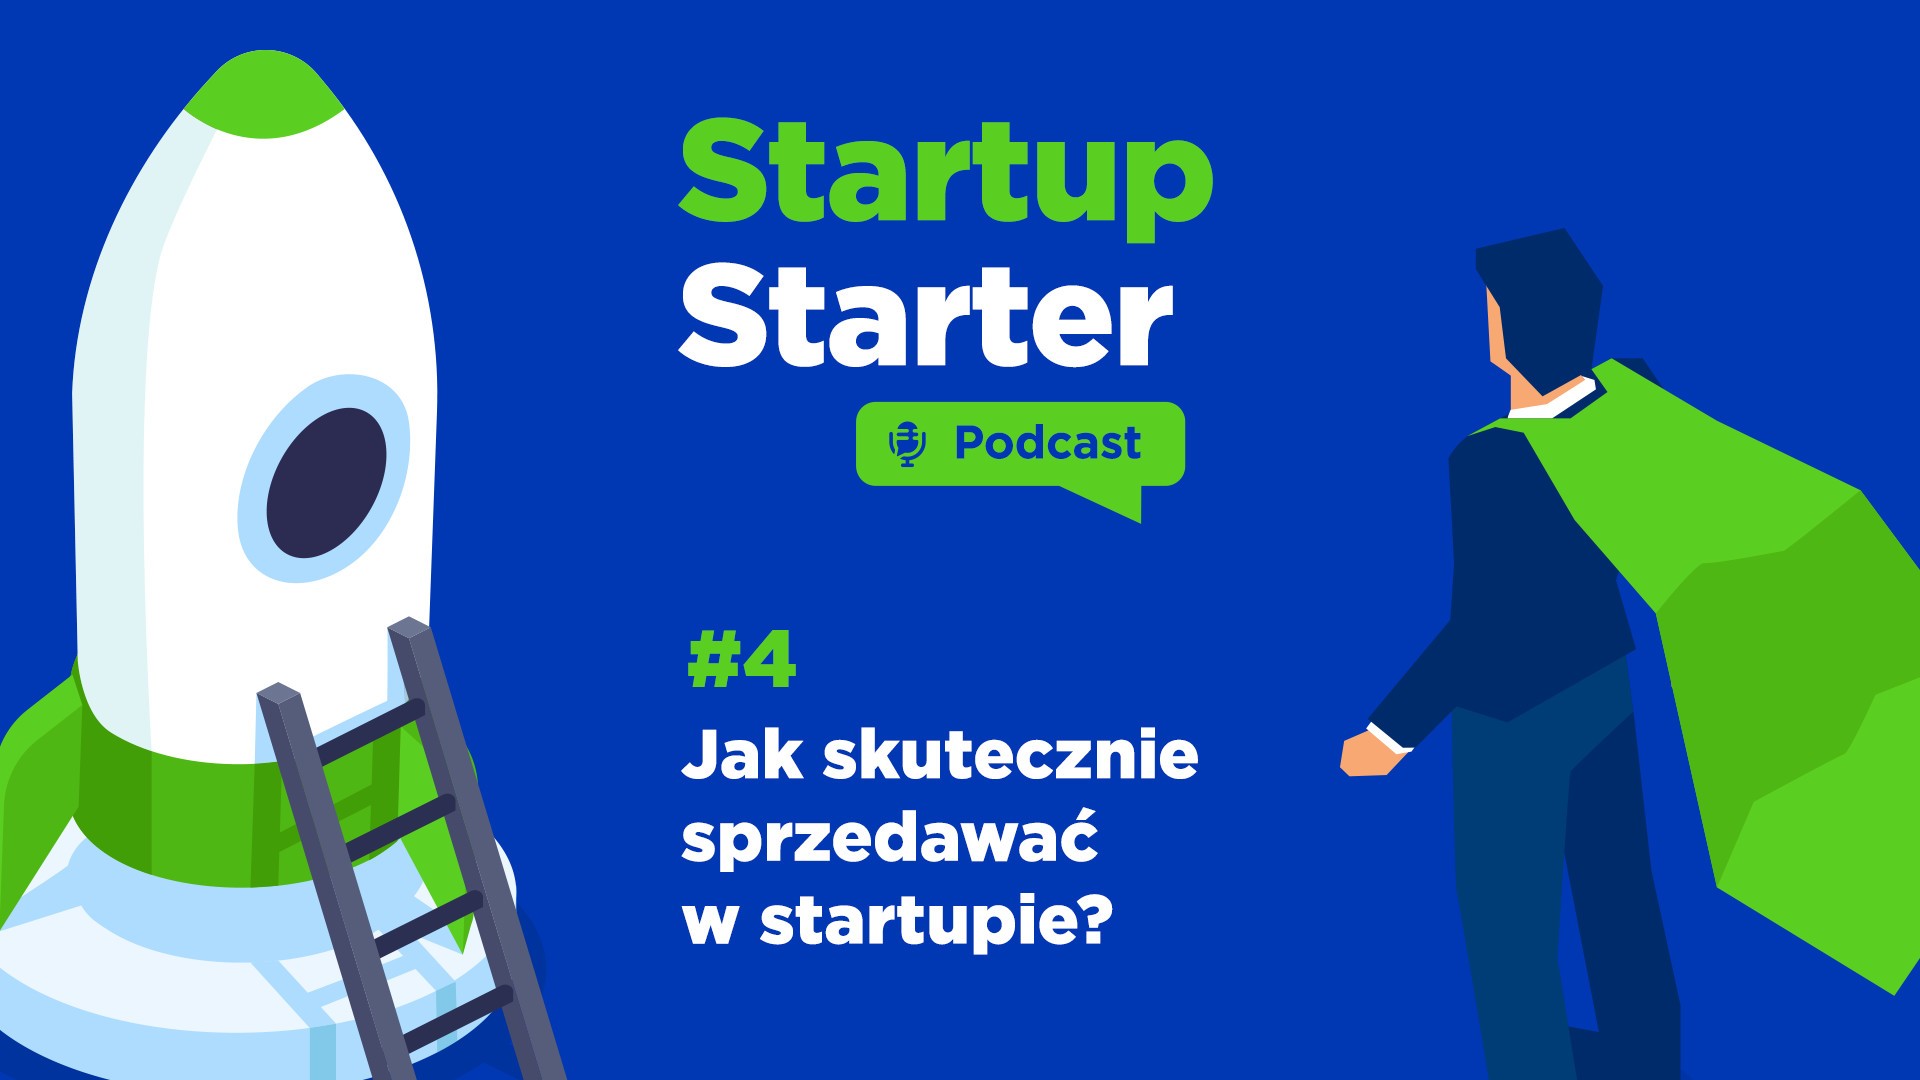 Startup Starter - Podcast #4 - Jak skutecznie sprzedawać w startupie?